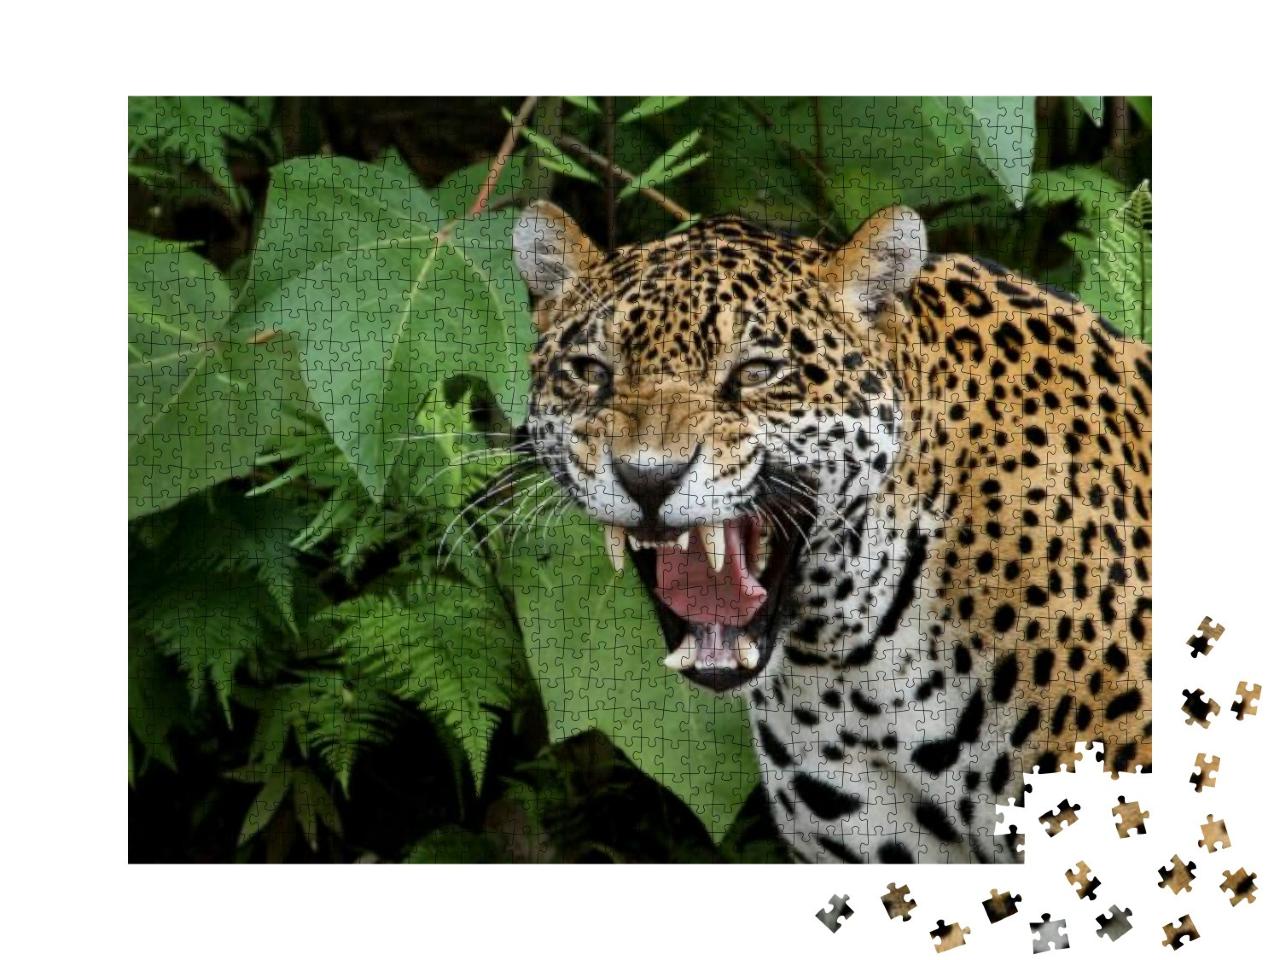 Puzzle 1000 Teile „Jaguar im Amazonaswald“